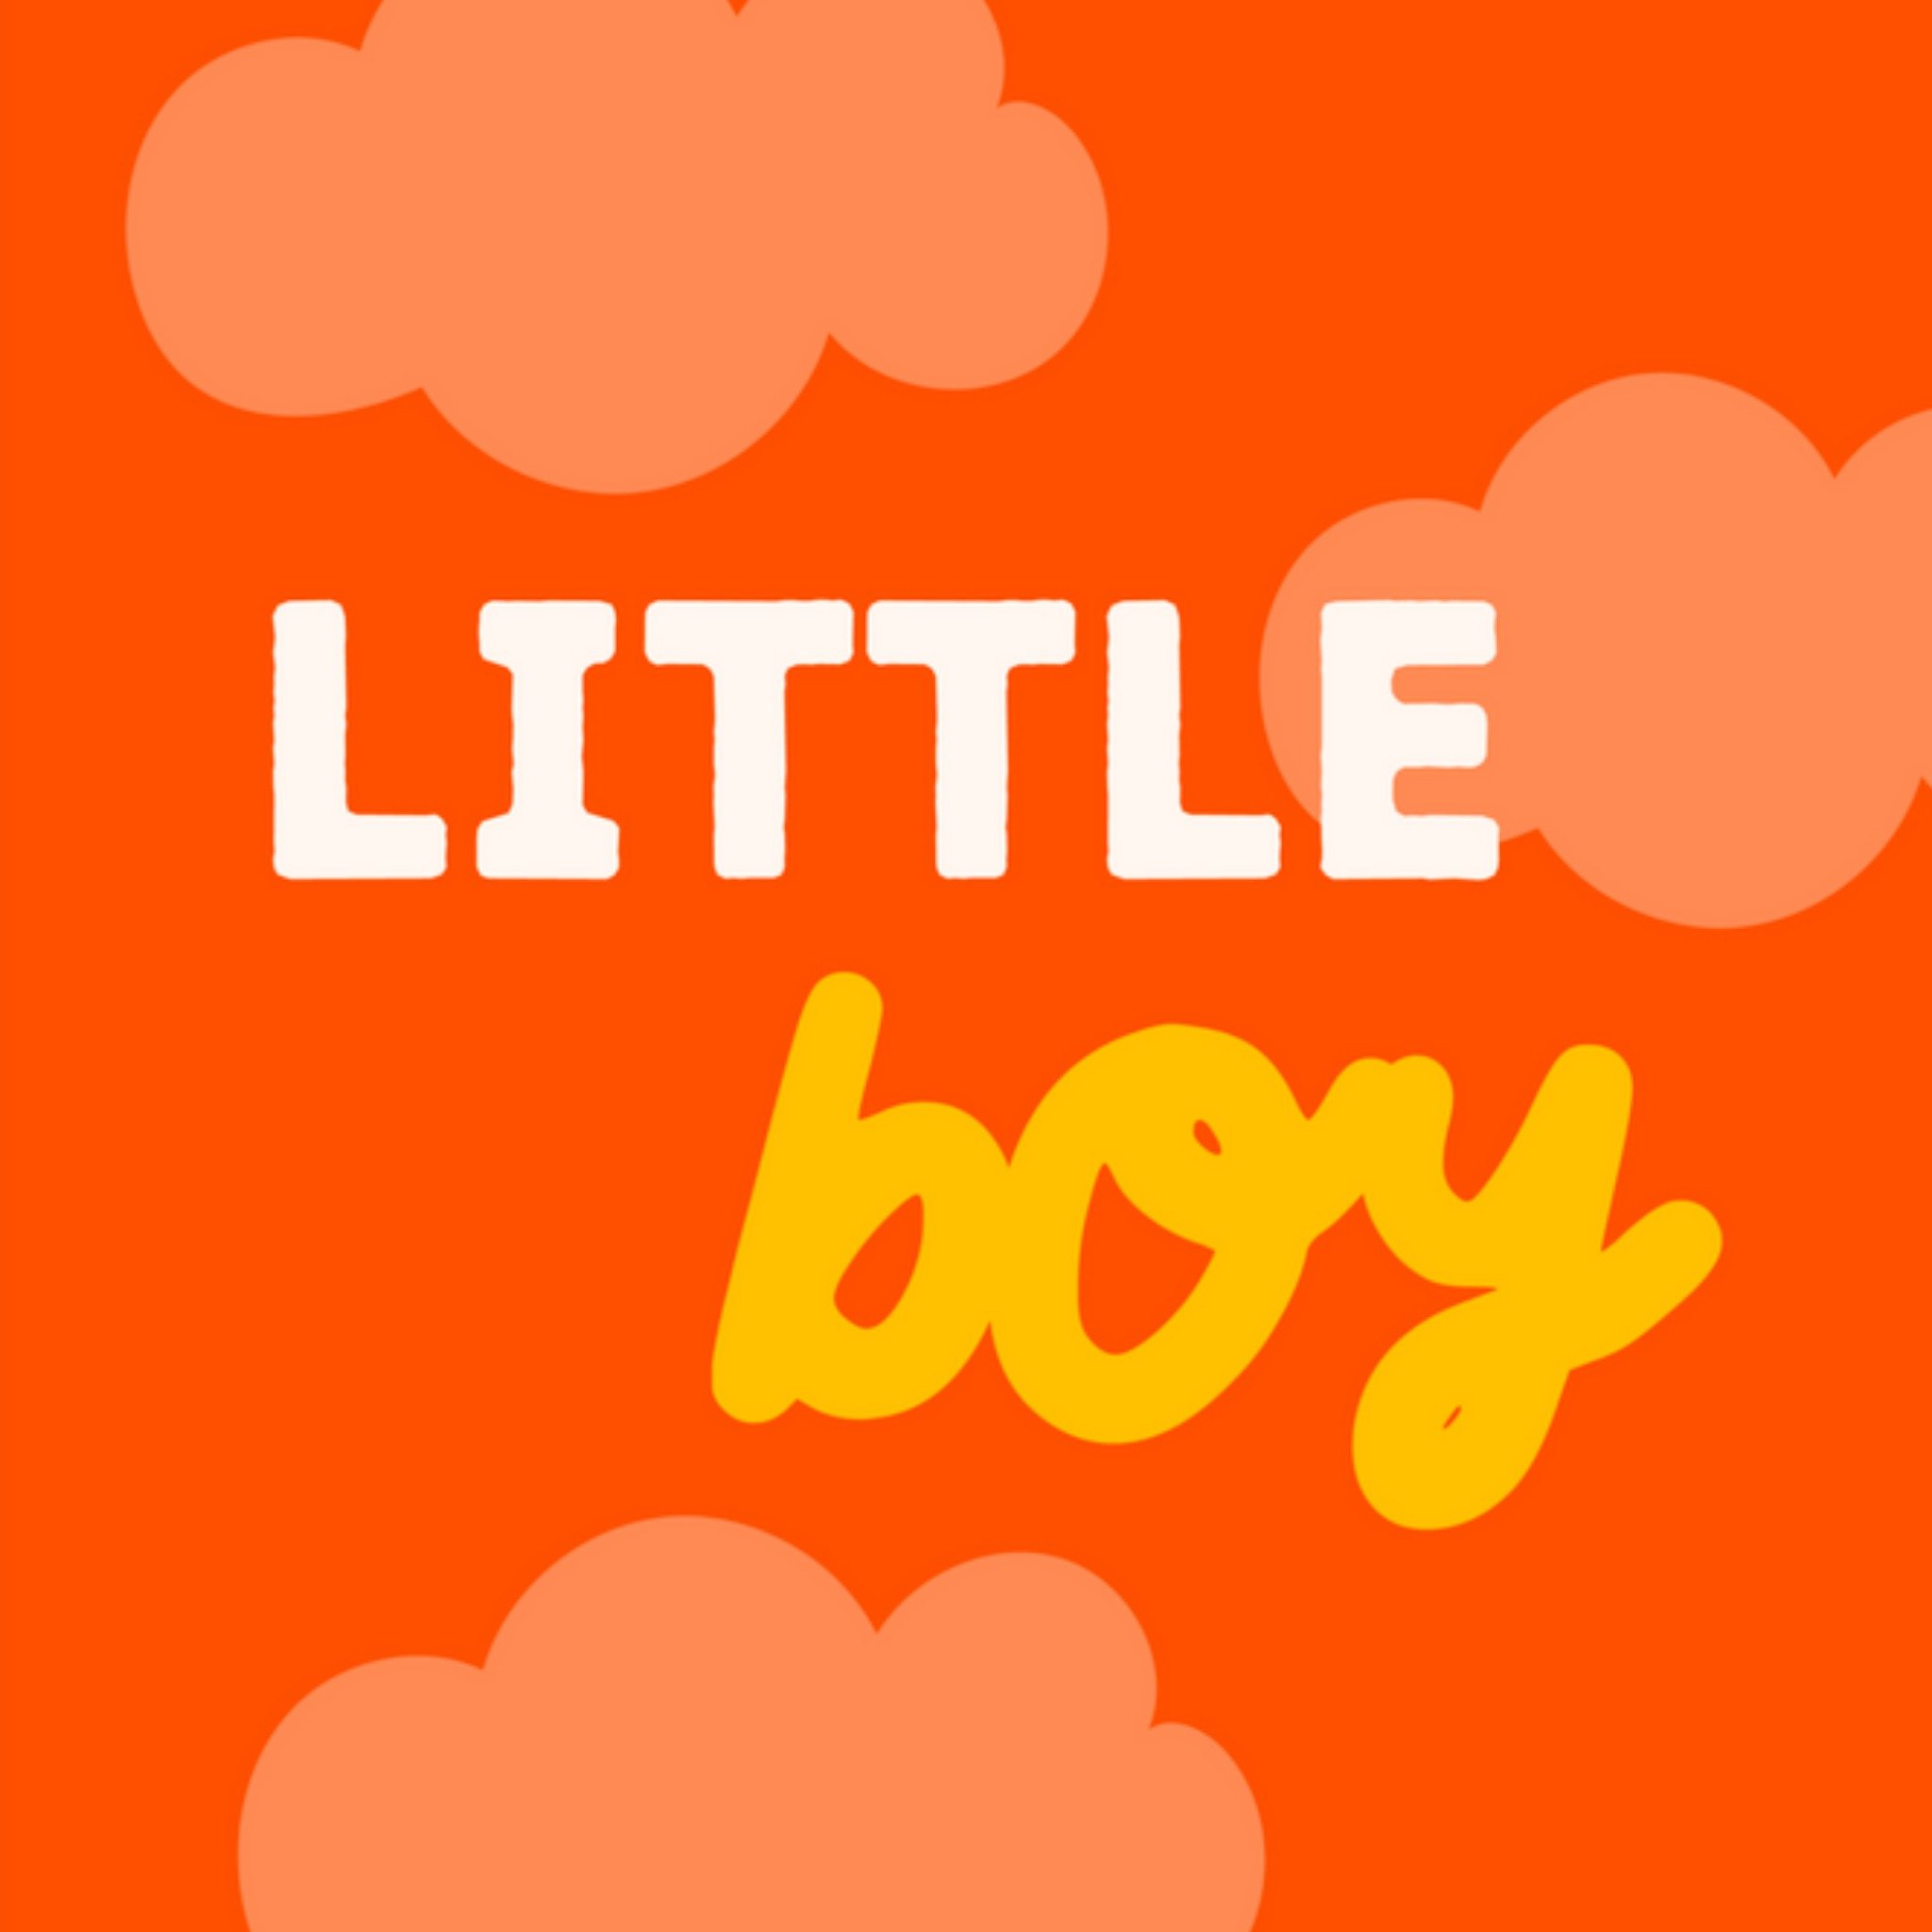 Geboortekaart - little boy